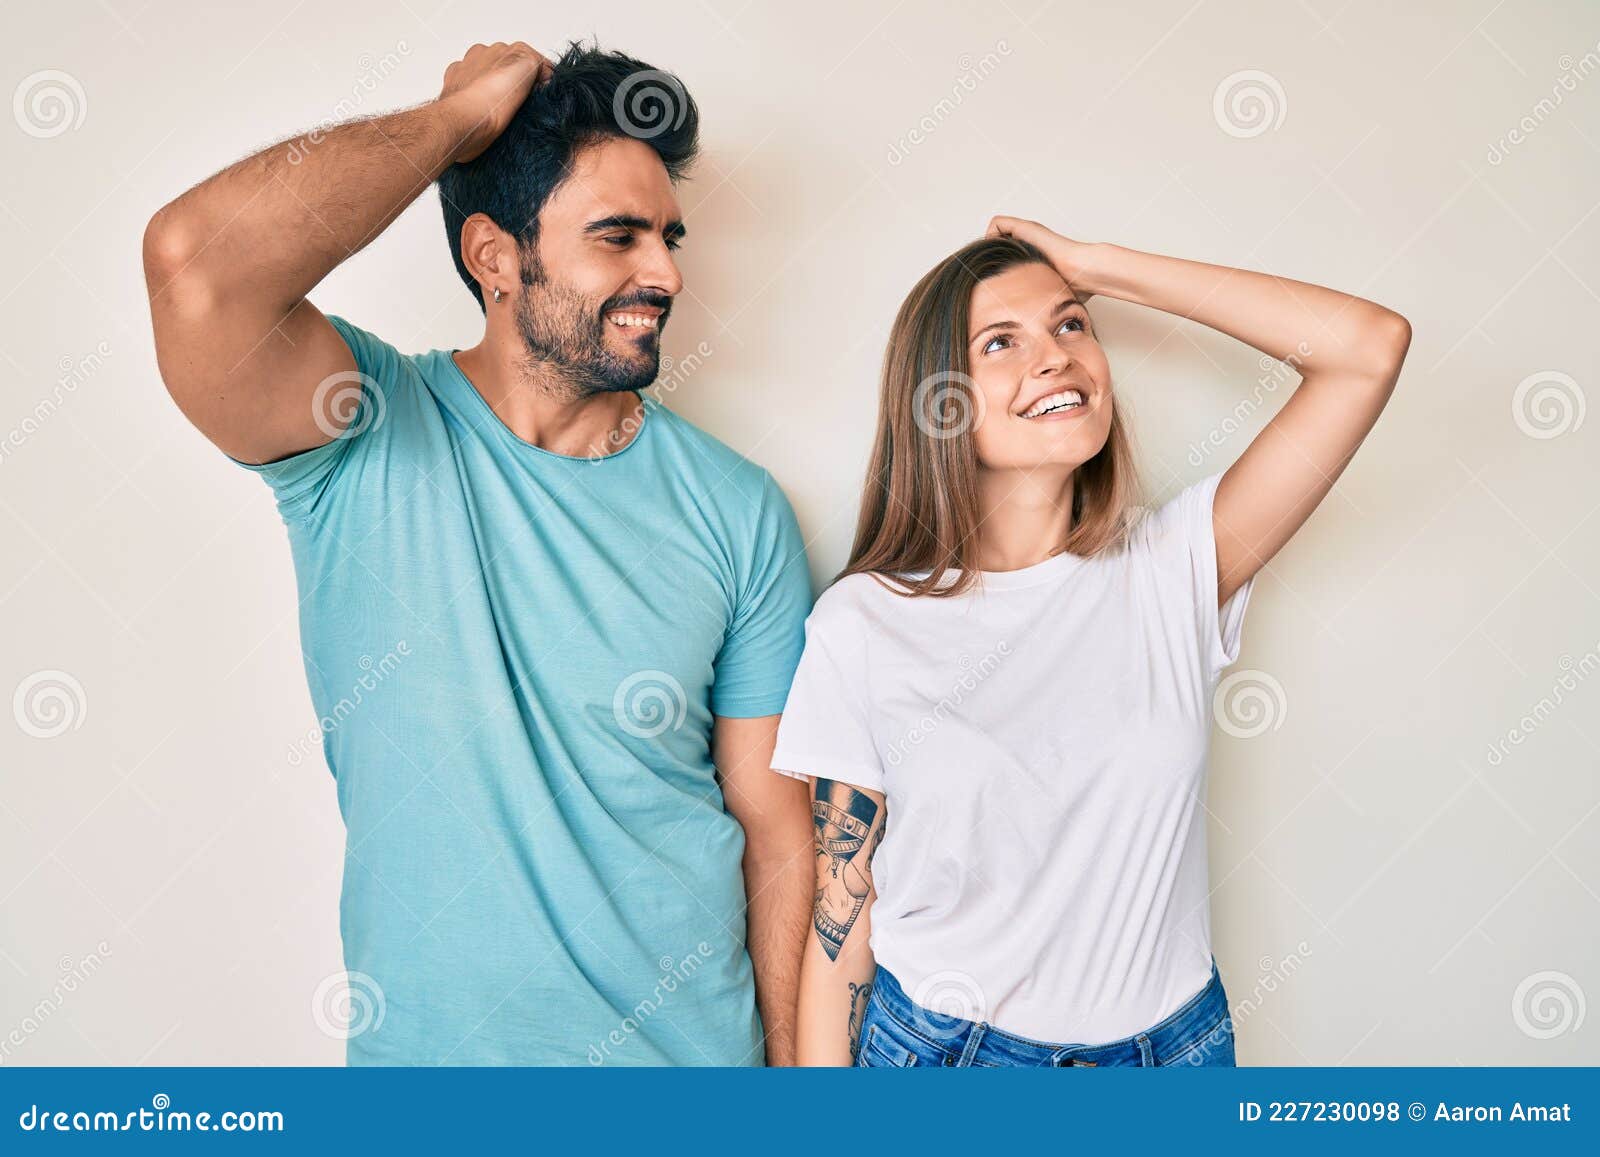 Cute Couple Winter hoot, boyfriend girlfriend graphy full HD phone  wallpaper | Pxfuel